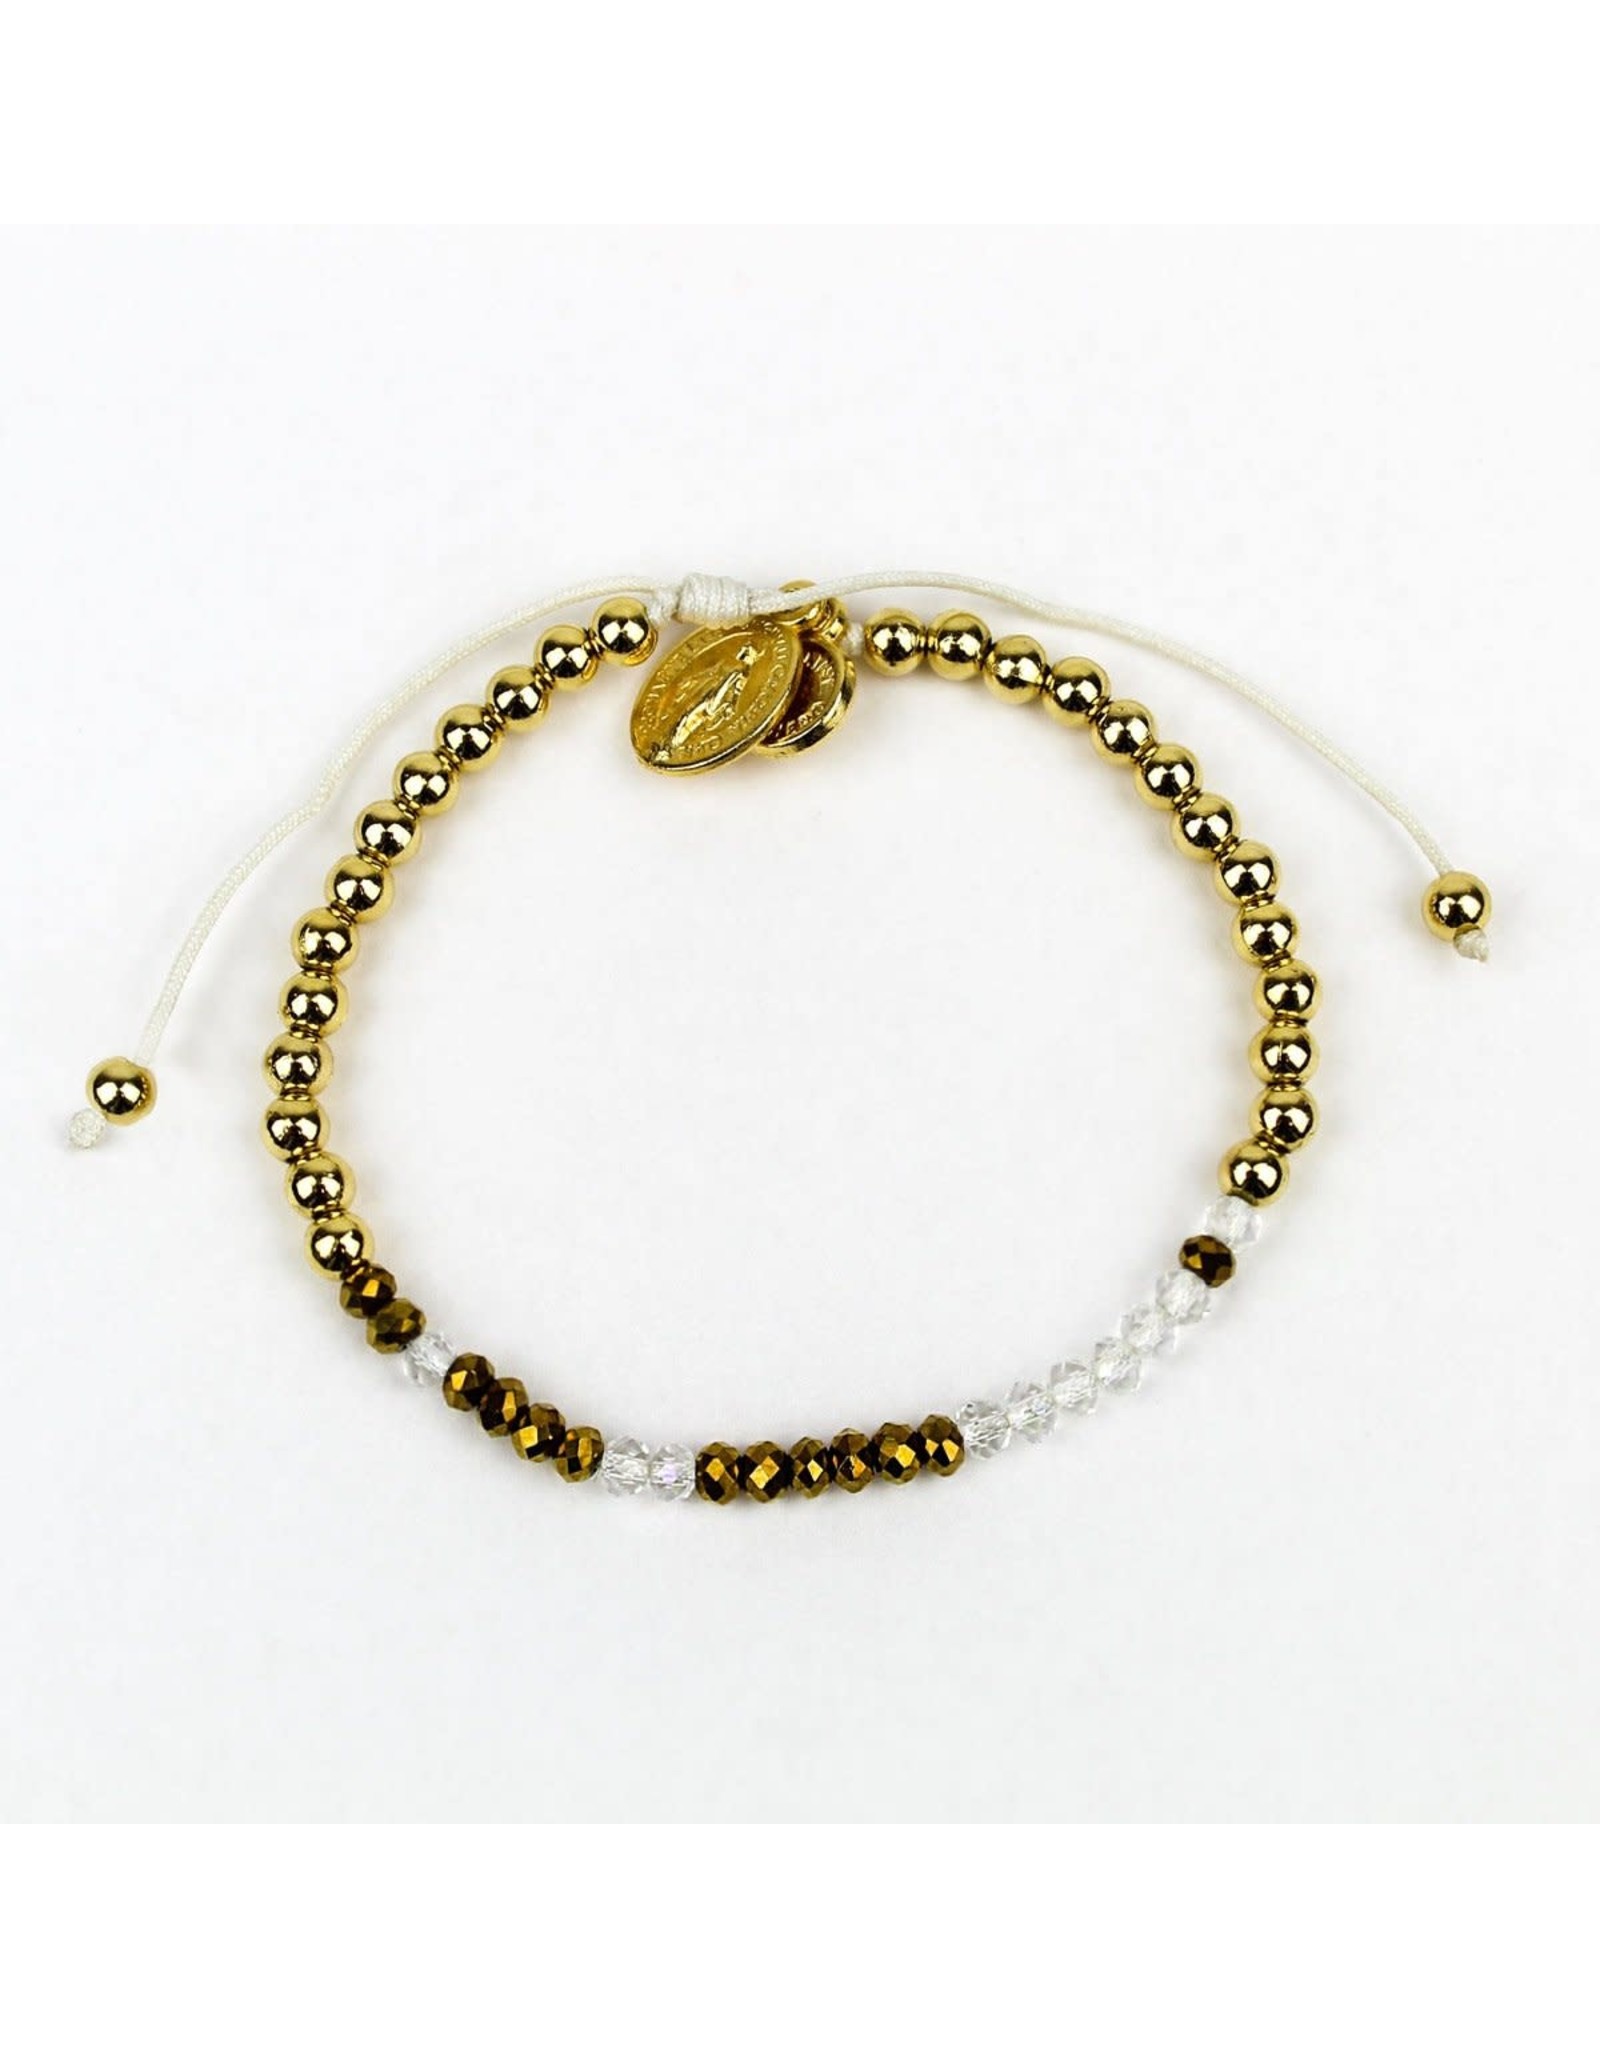 Bracelet - Godmother, Morse Code - Gold